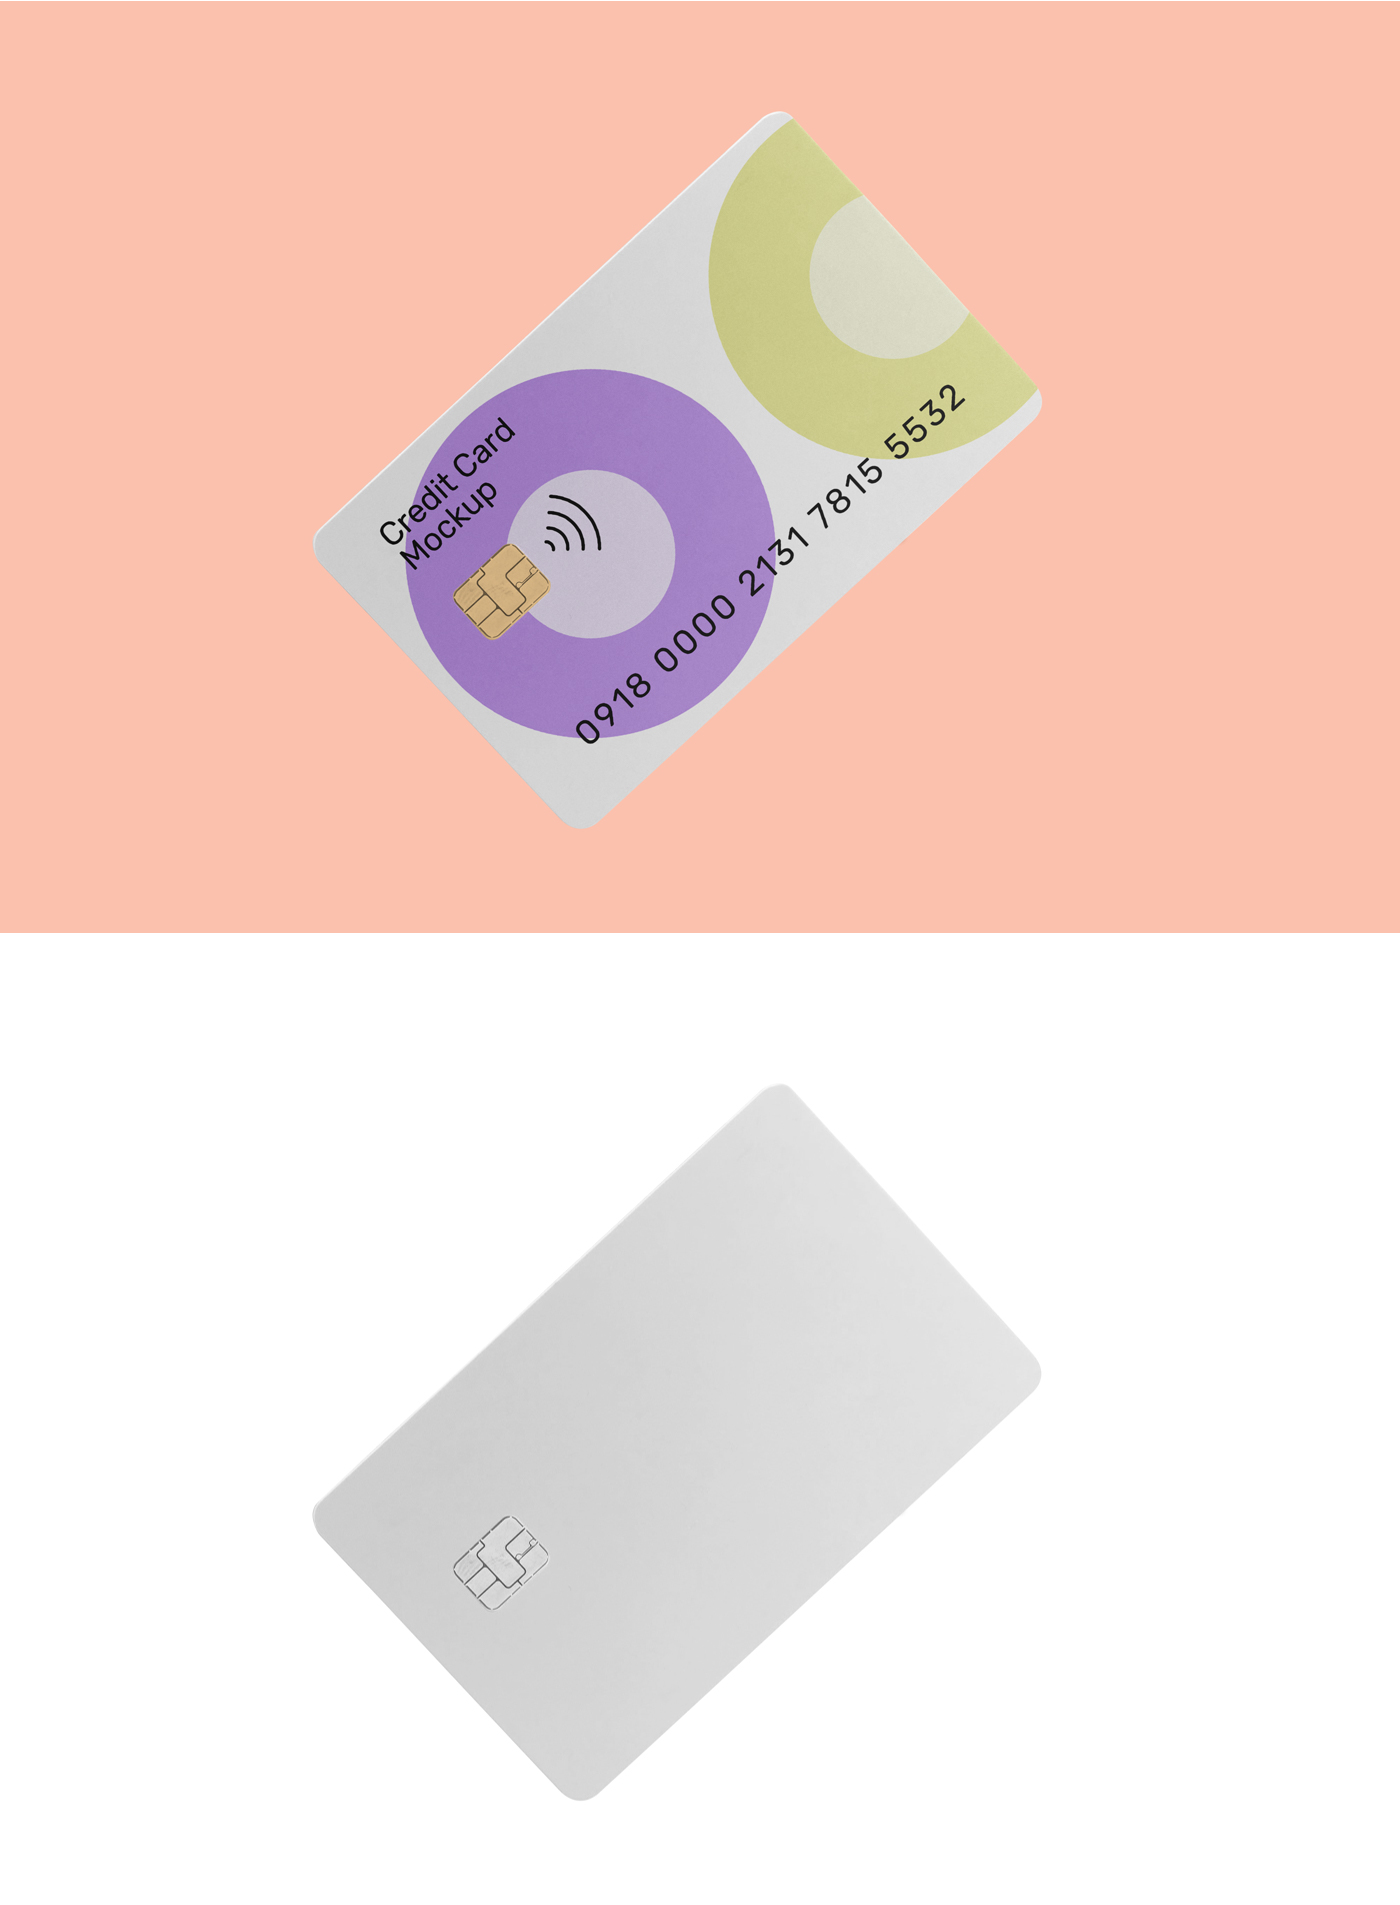 415 可商用银行卡信用卡磁卡设计PSD样机素材 Credit Card PSD Mockup Graphic yythkg.zip